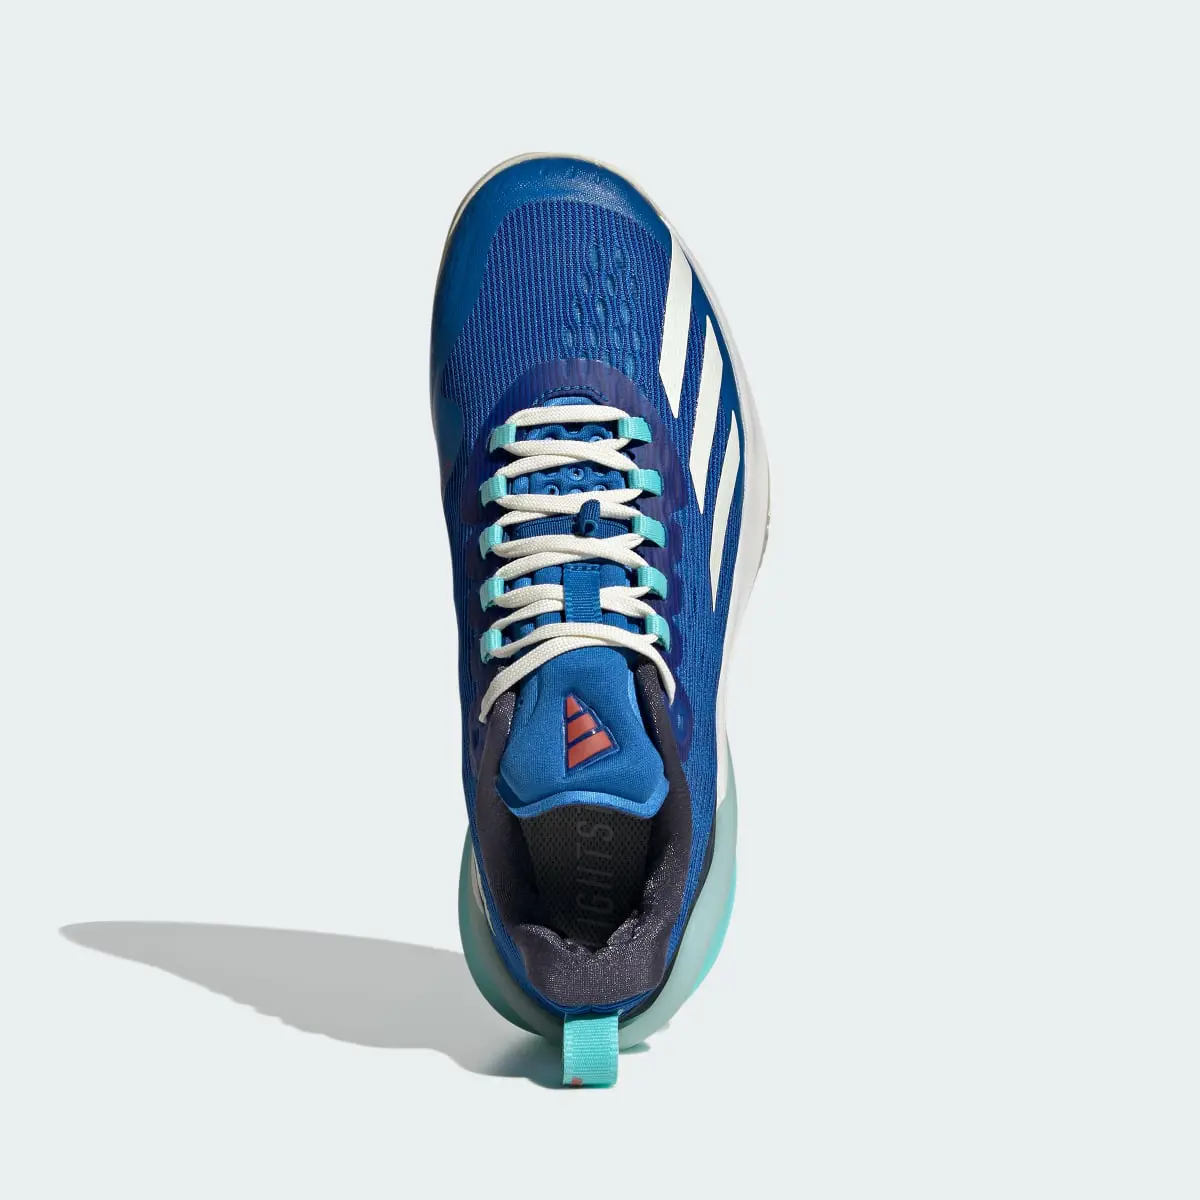 Adidas adizero Cybersonic Tennis Shoes. 3